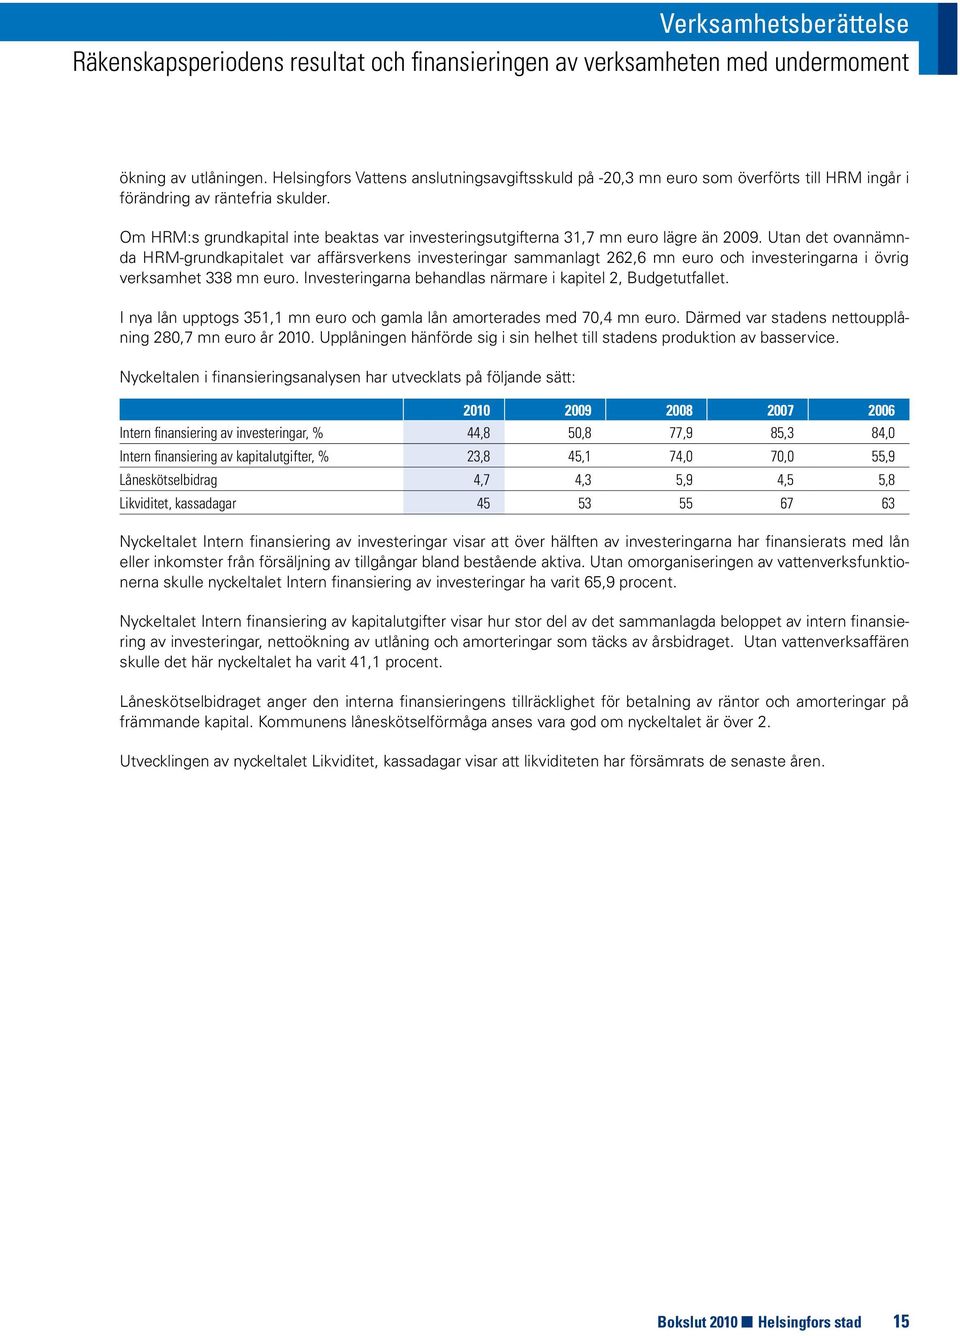 Om HRM:s grundkapital inte beaktas var investeringsutgifterna 31,7 mn euro lägre än 2009.